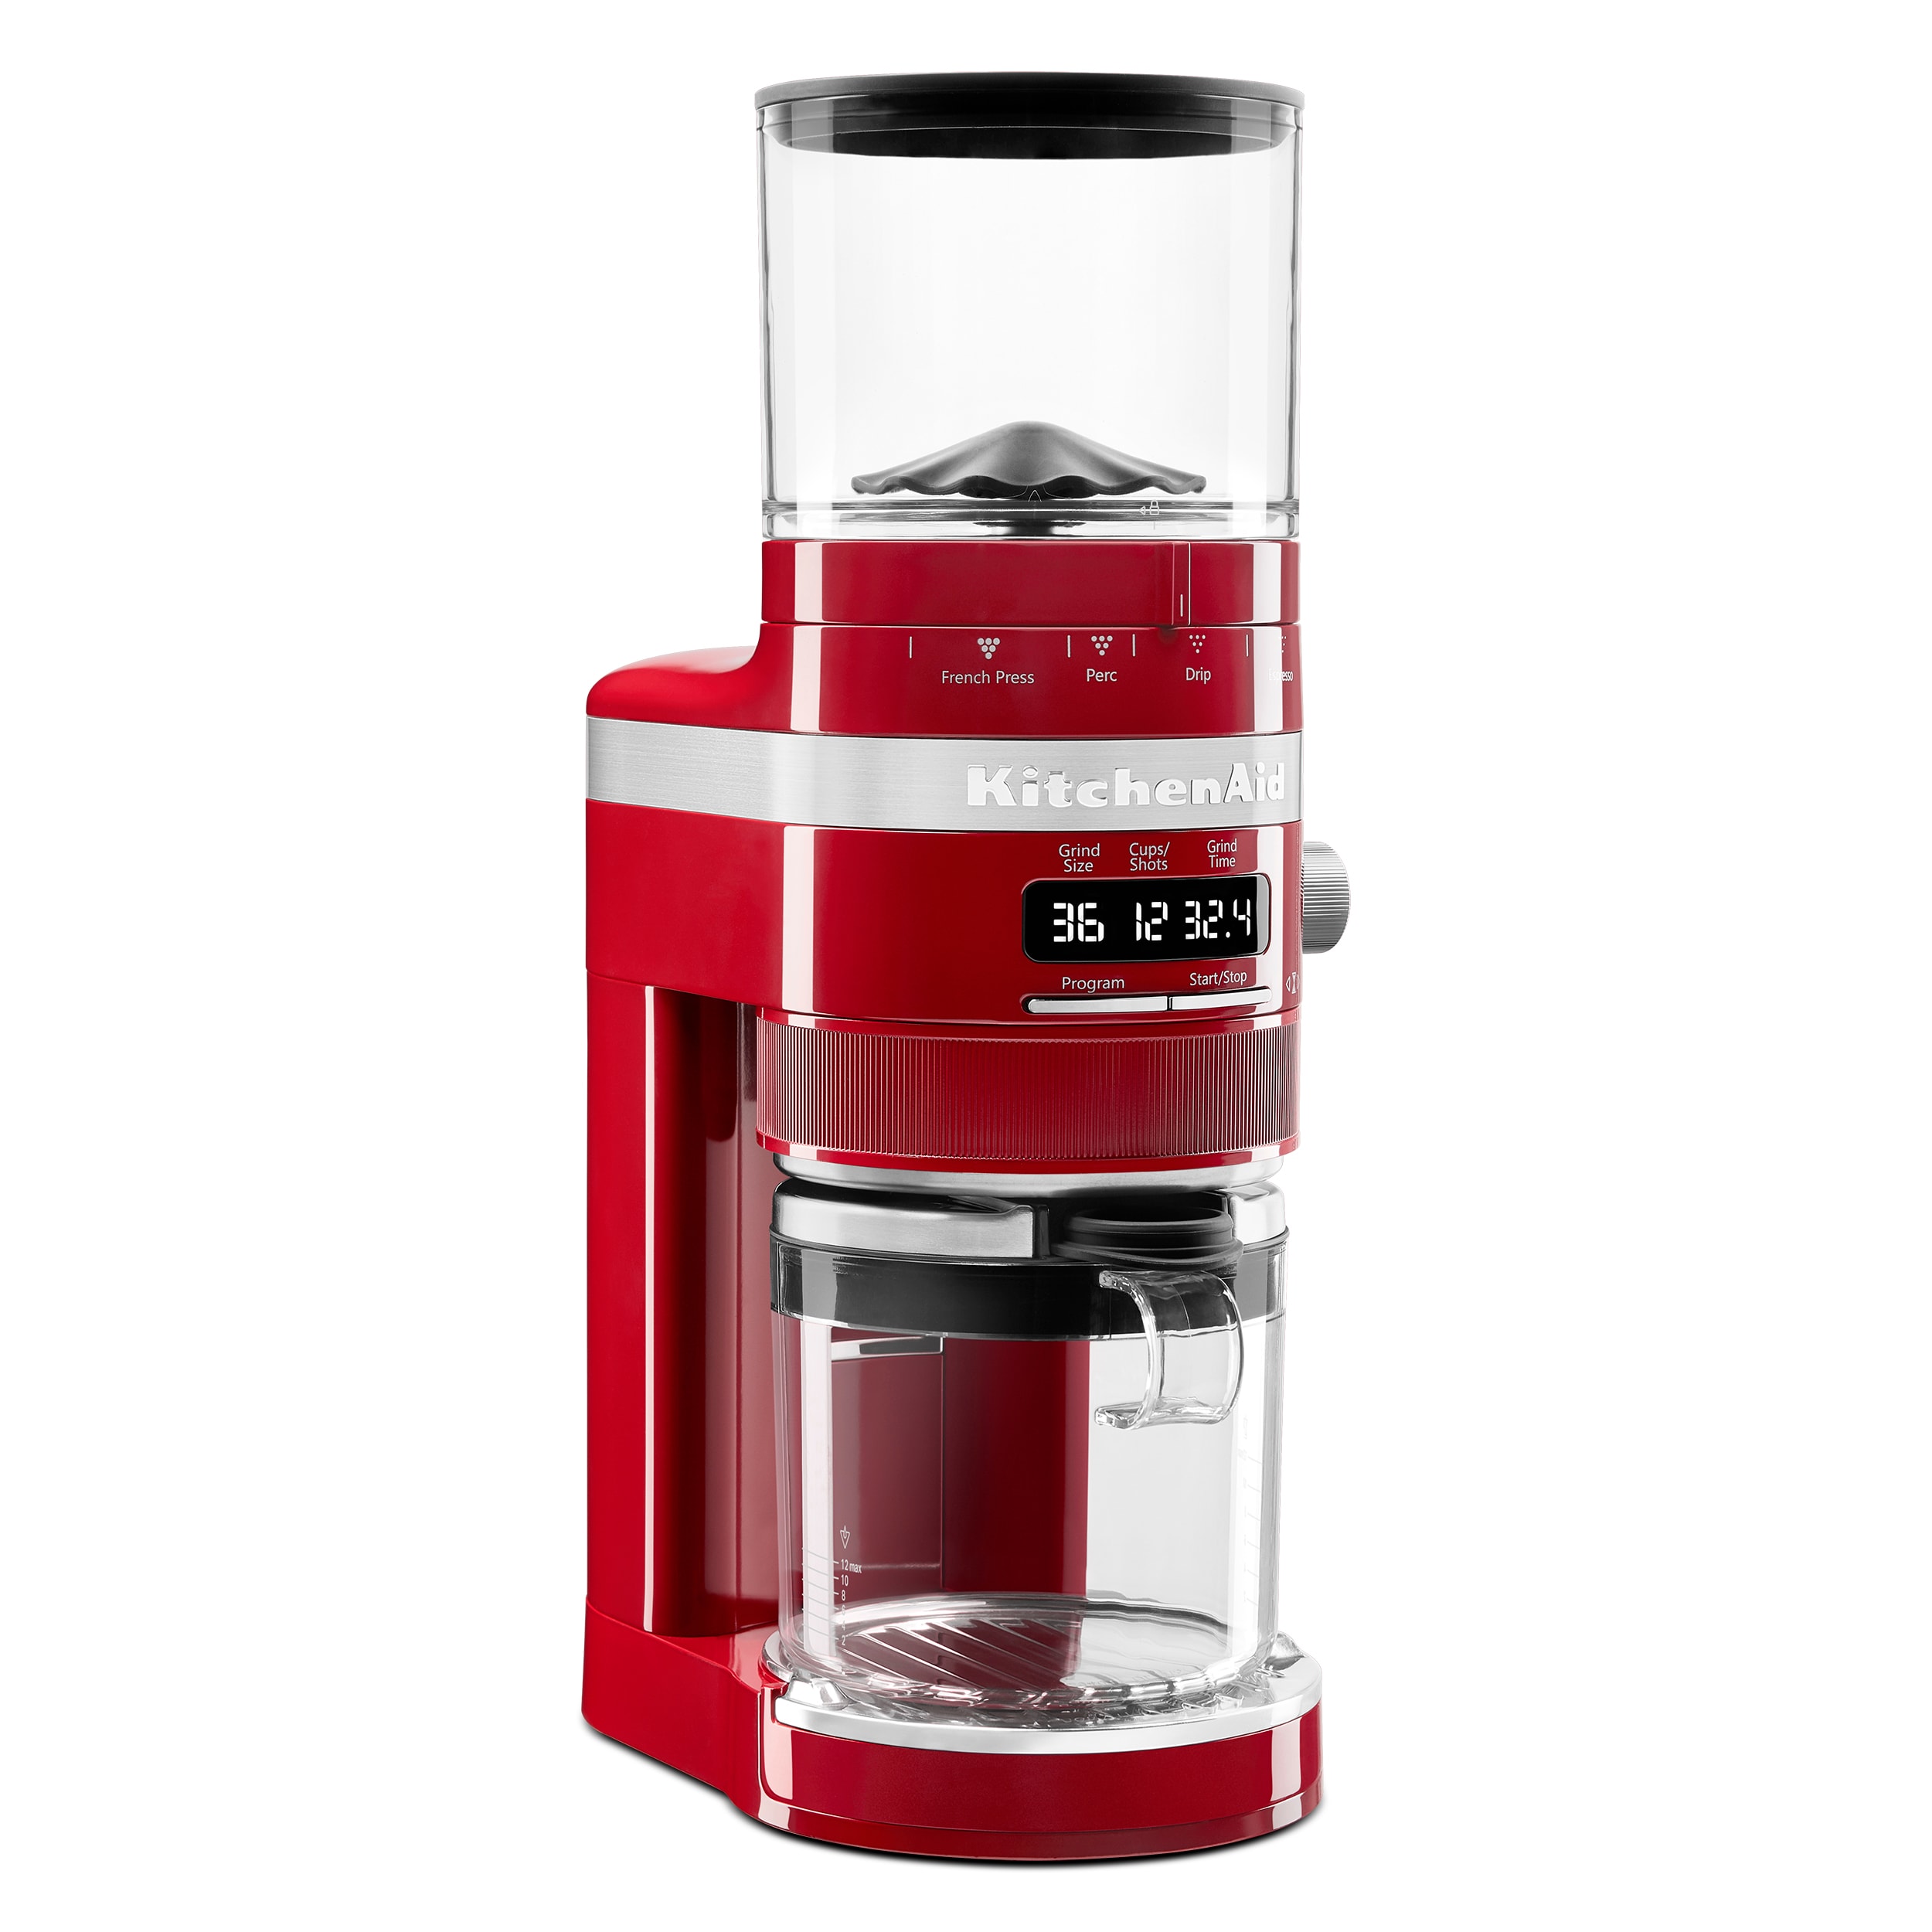  bodum Bistro Burr Coffee Grinder, 12-Inch, Red : Home & Kitchen